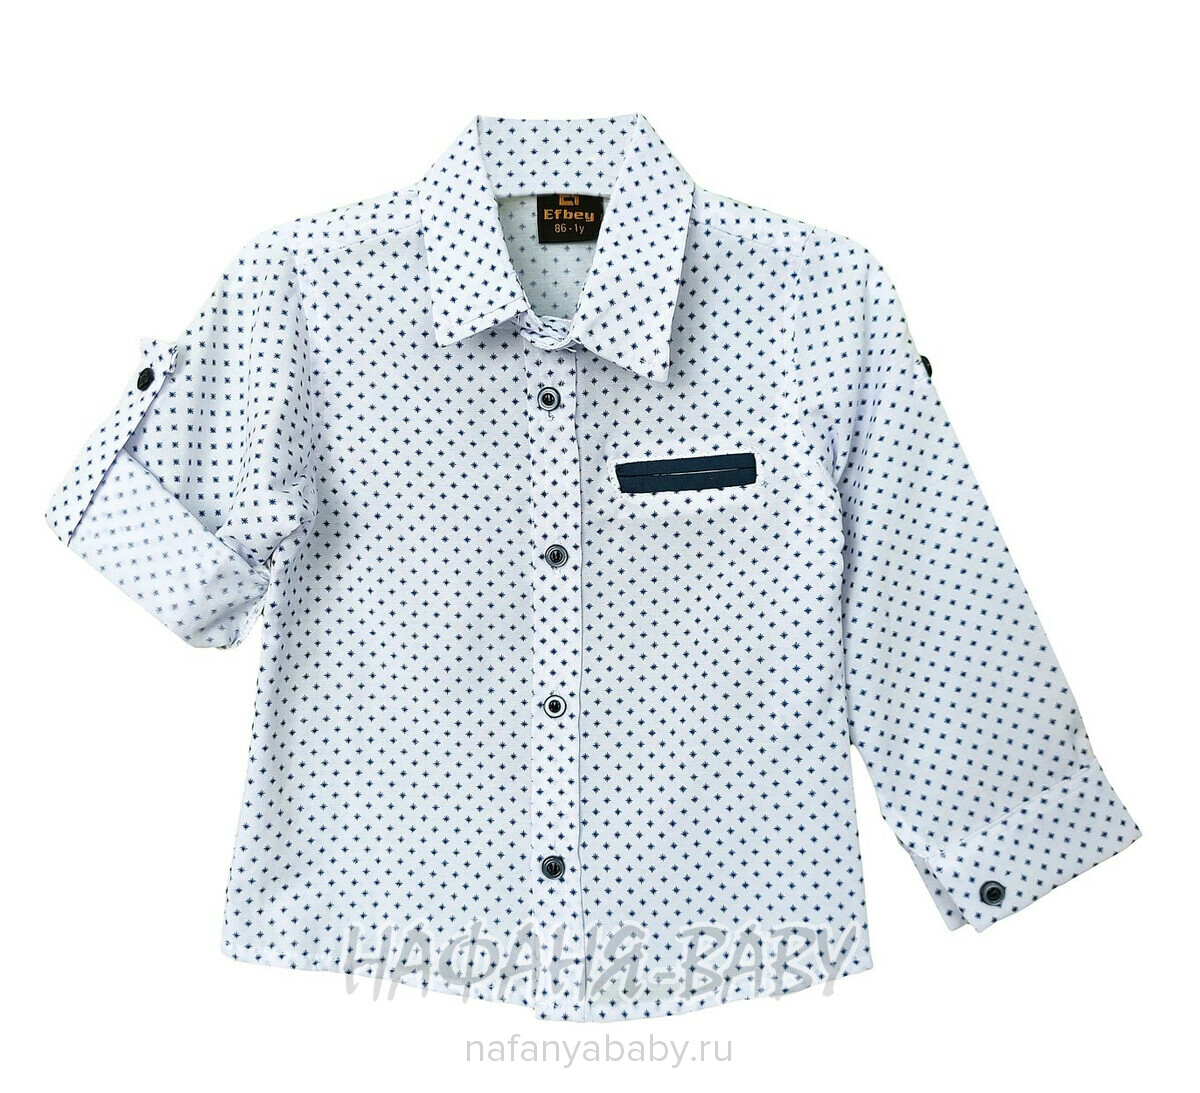 Детский костюм (рубашка + брюки) EFBEY арт. 3087, 1-4 года, цвет белый с синим, оптом Турция